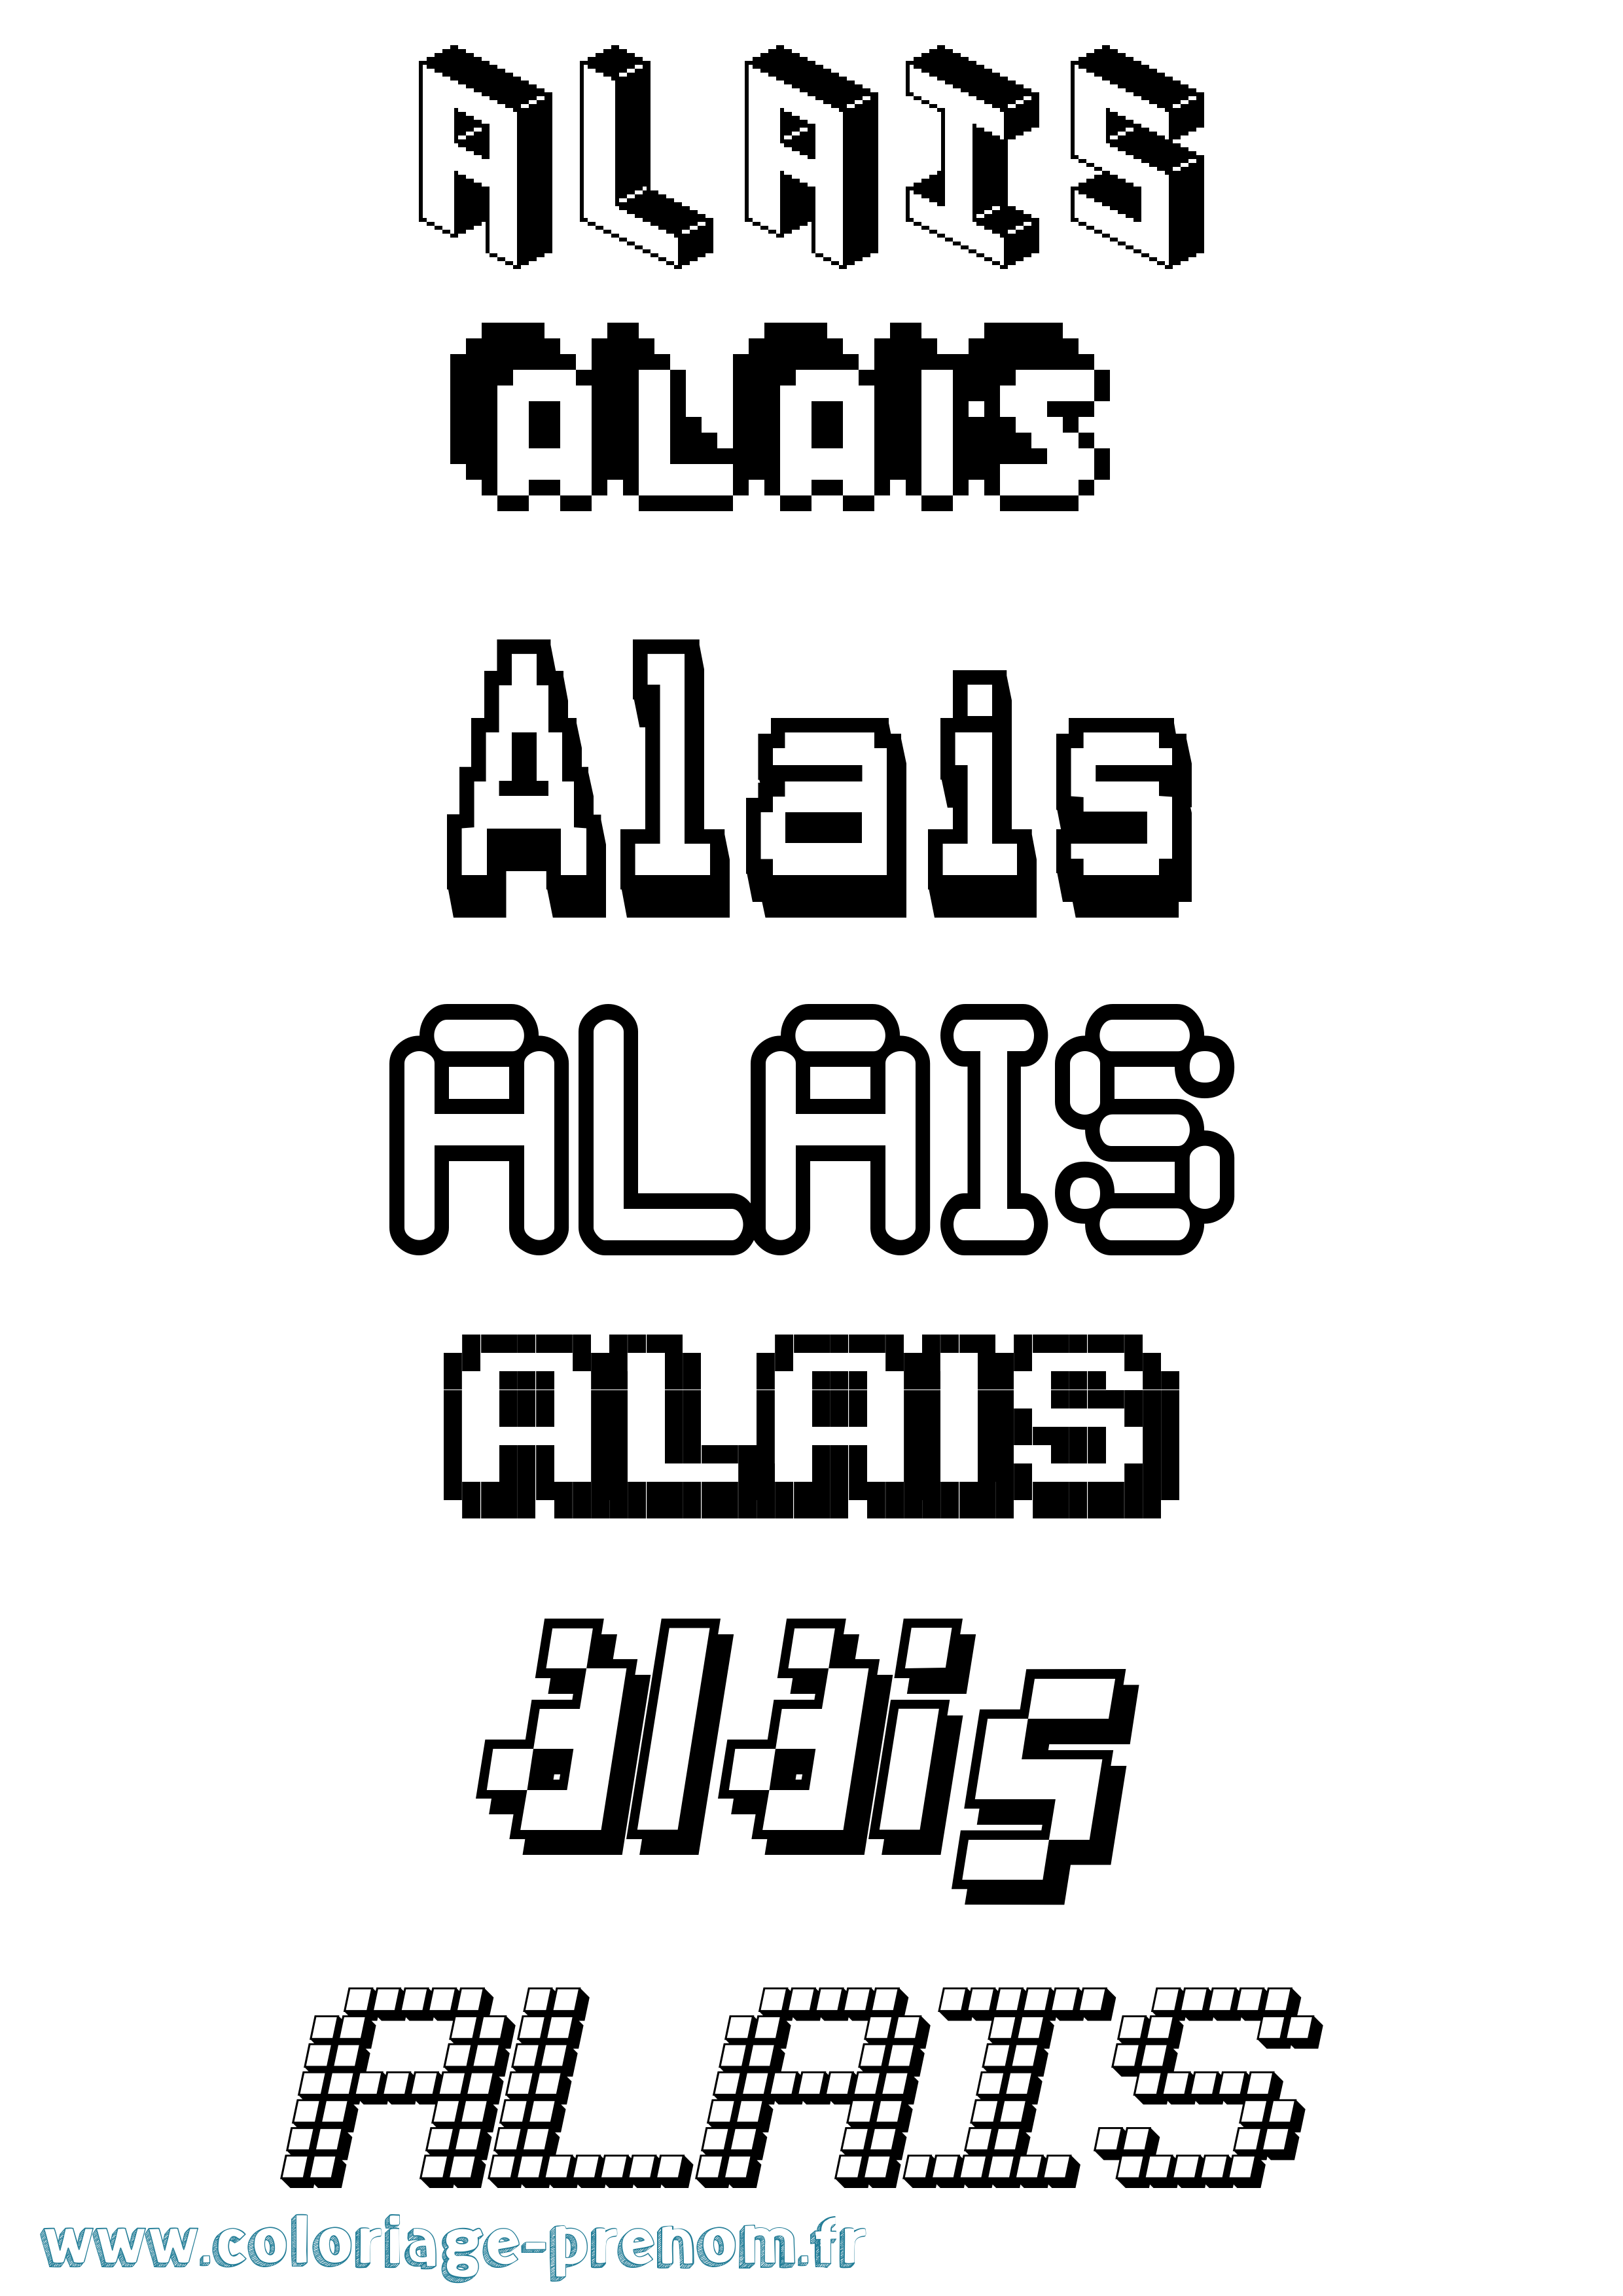 Coloriage prénom Alais Pixel